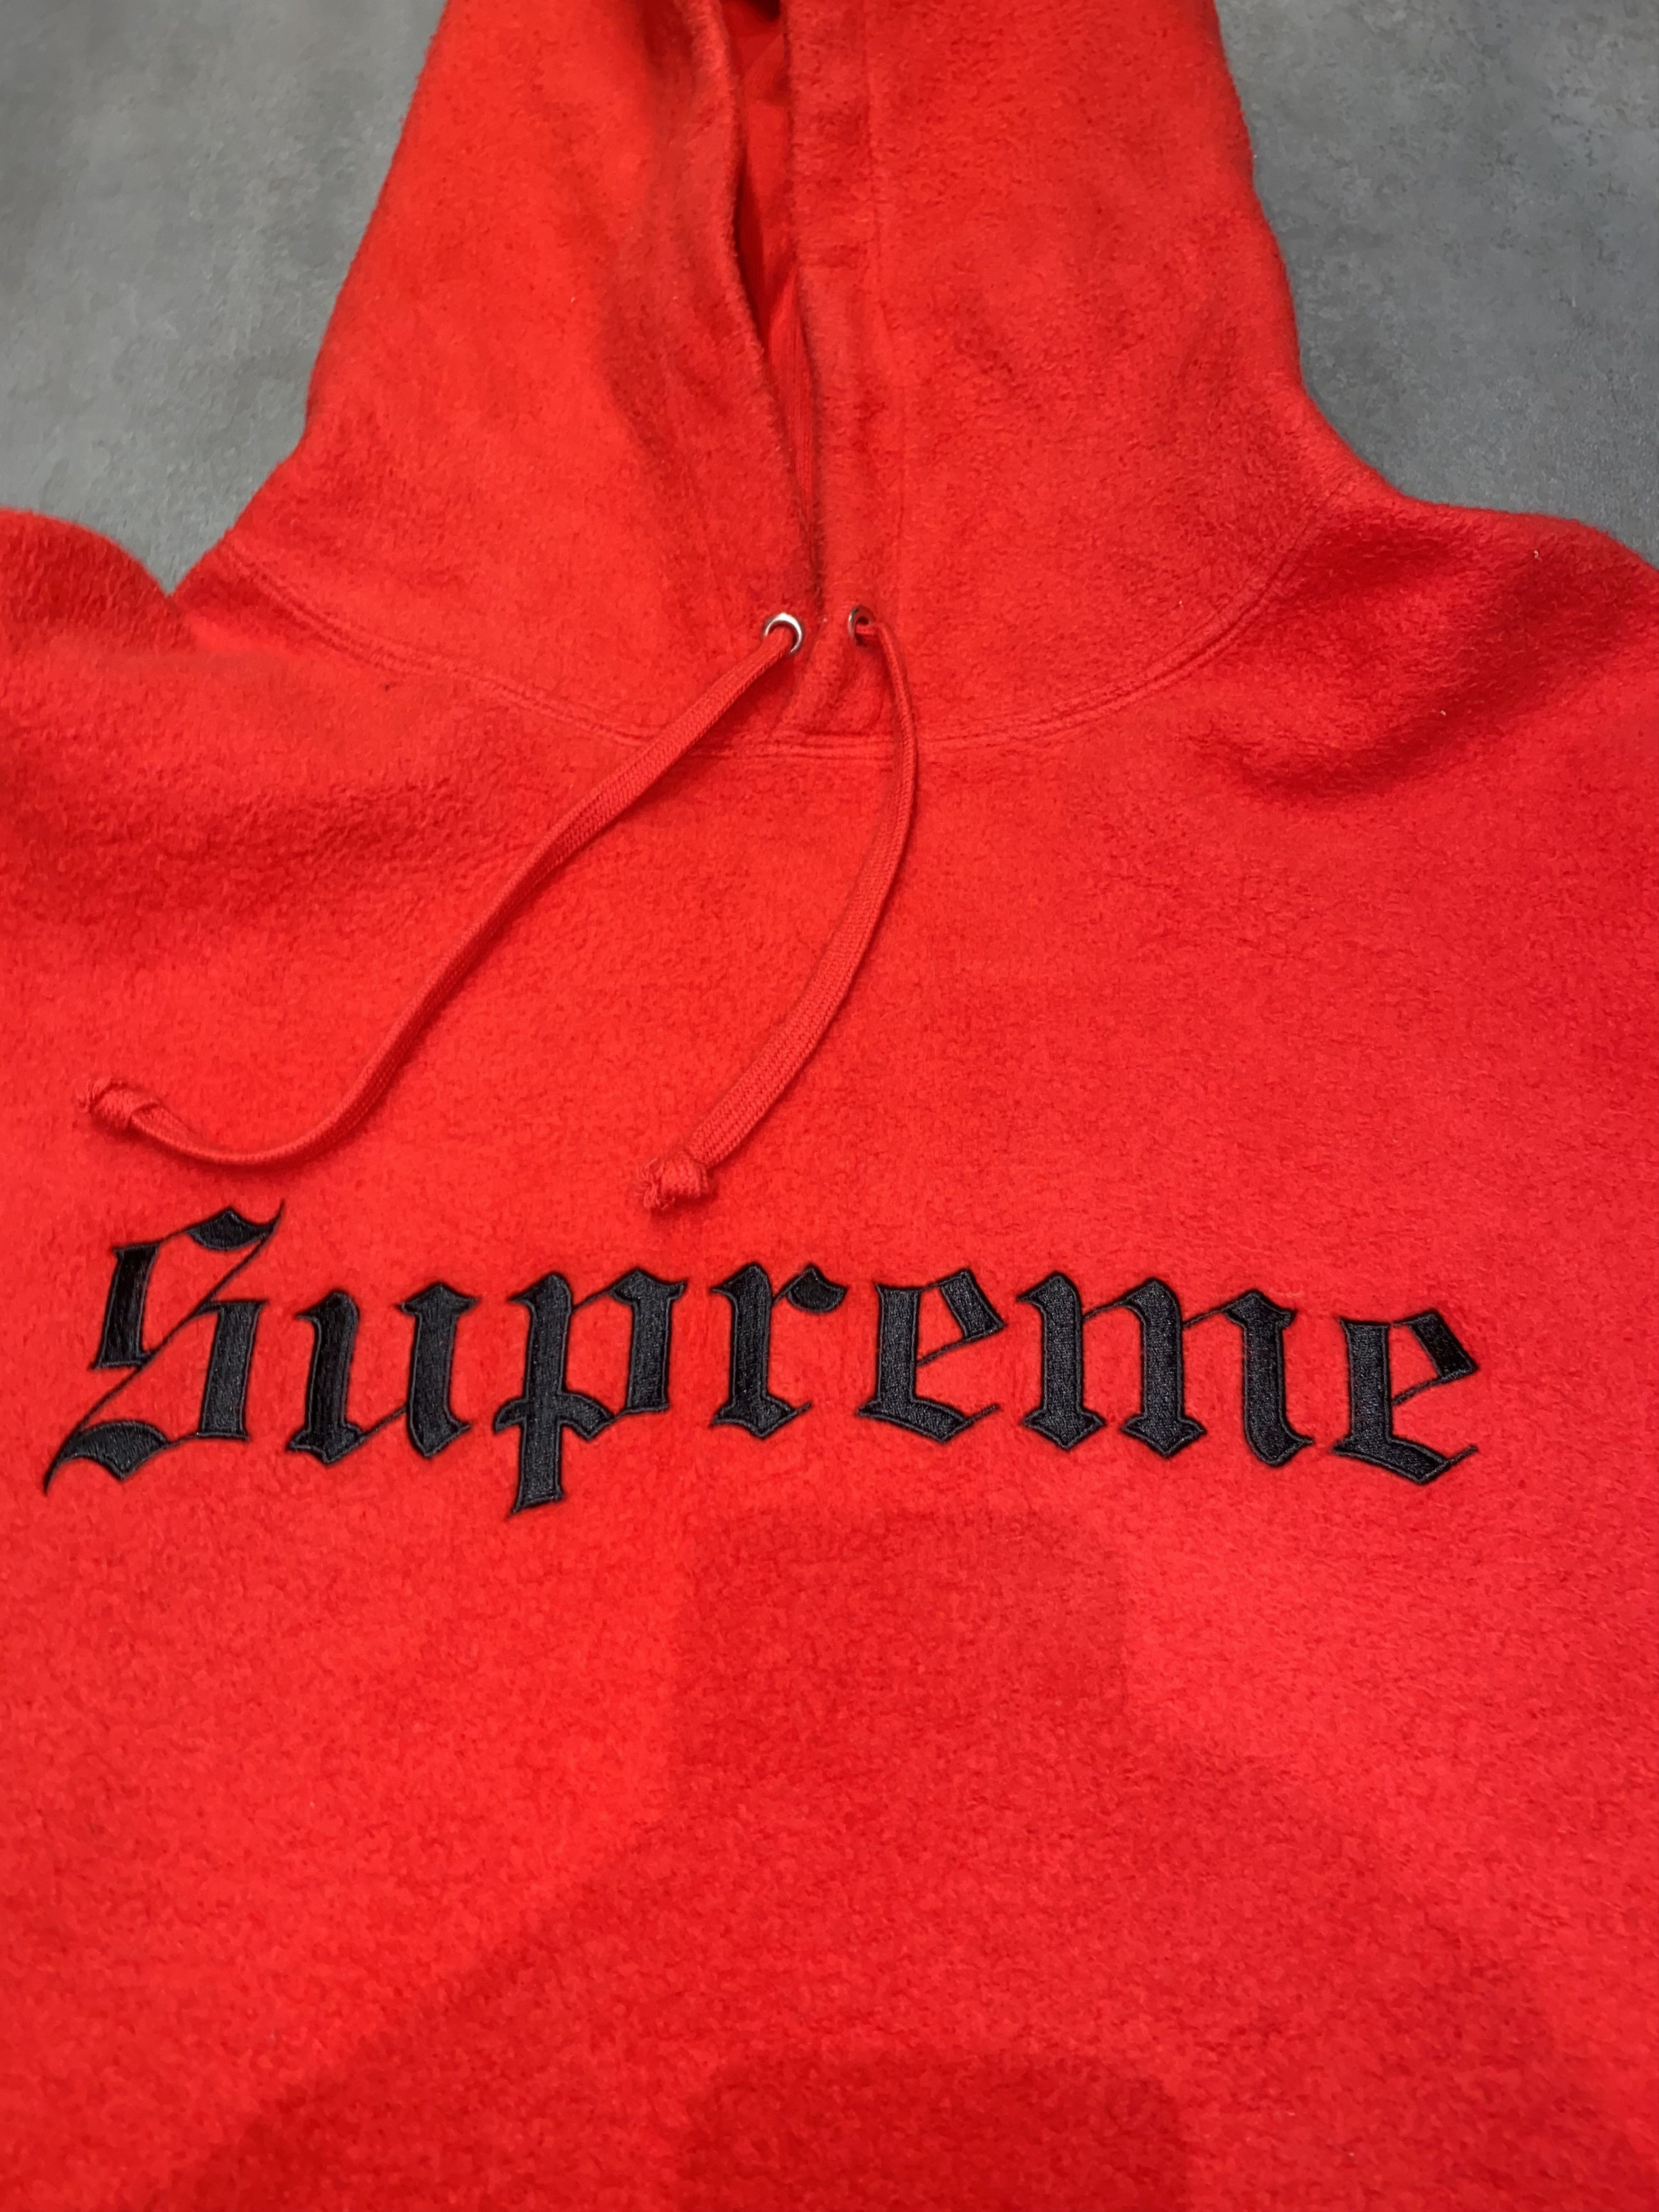 Supreme FW16 Supreme Big Logo Red Fleece Hoodie Size US XL / EU 56 / 4 - 10 Thumbnail